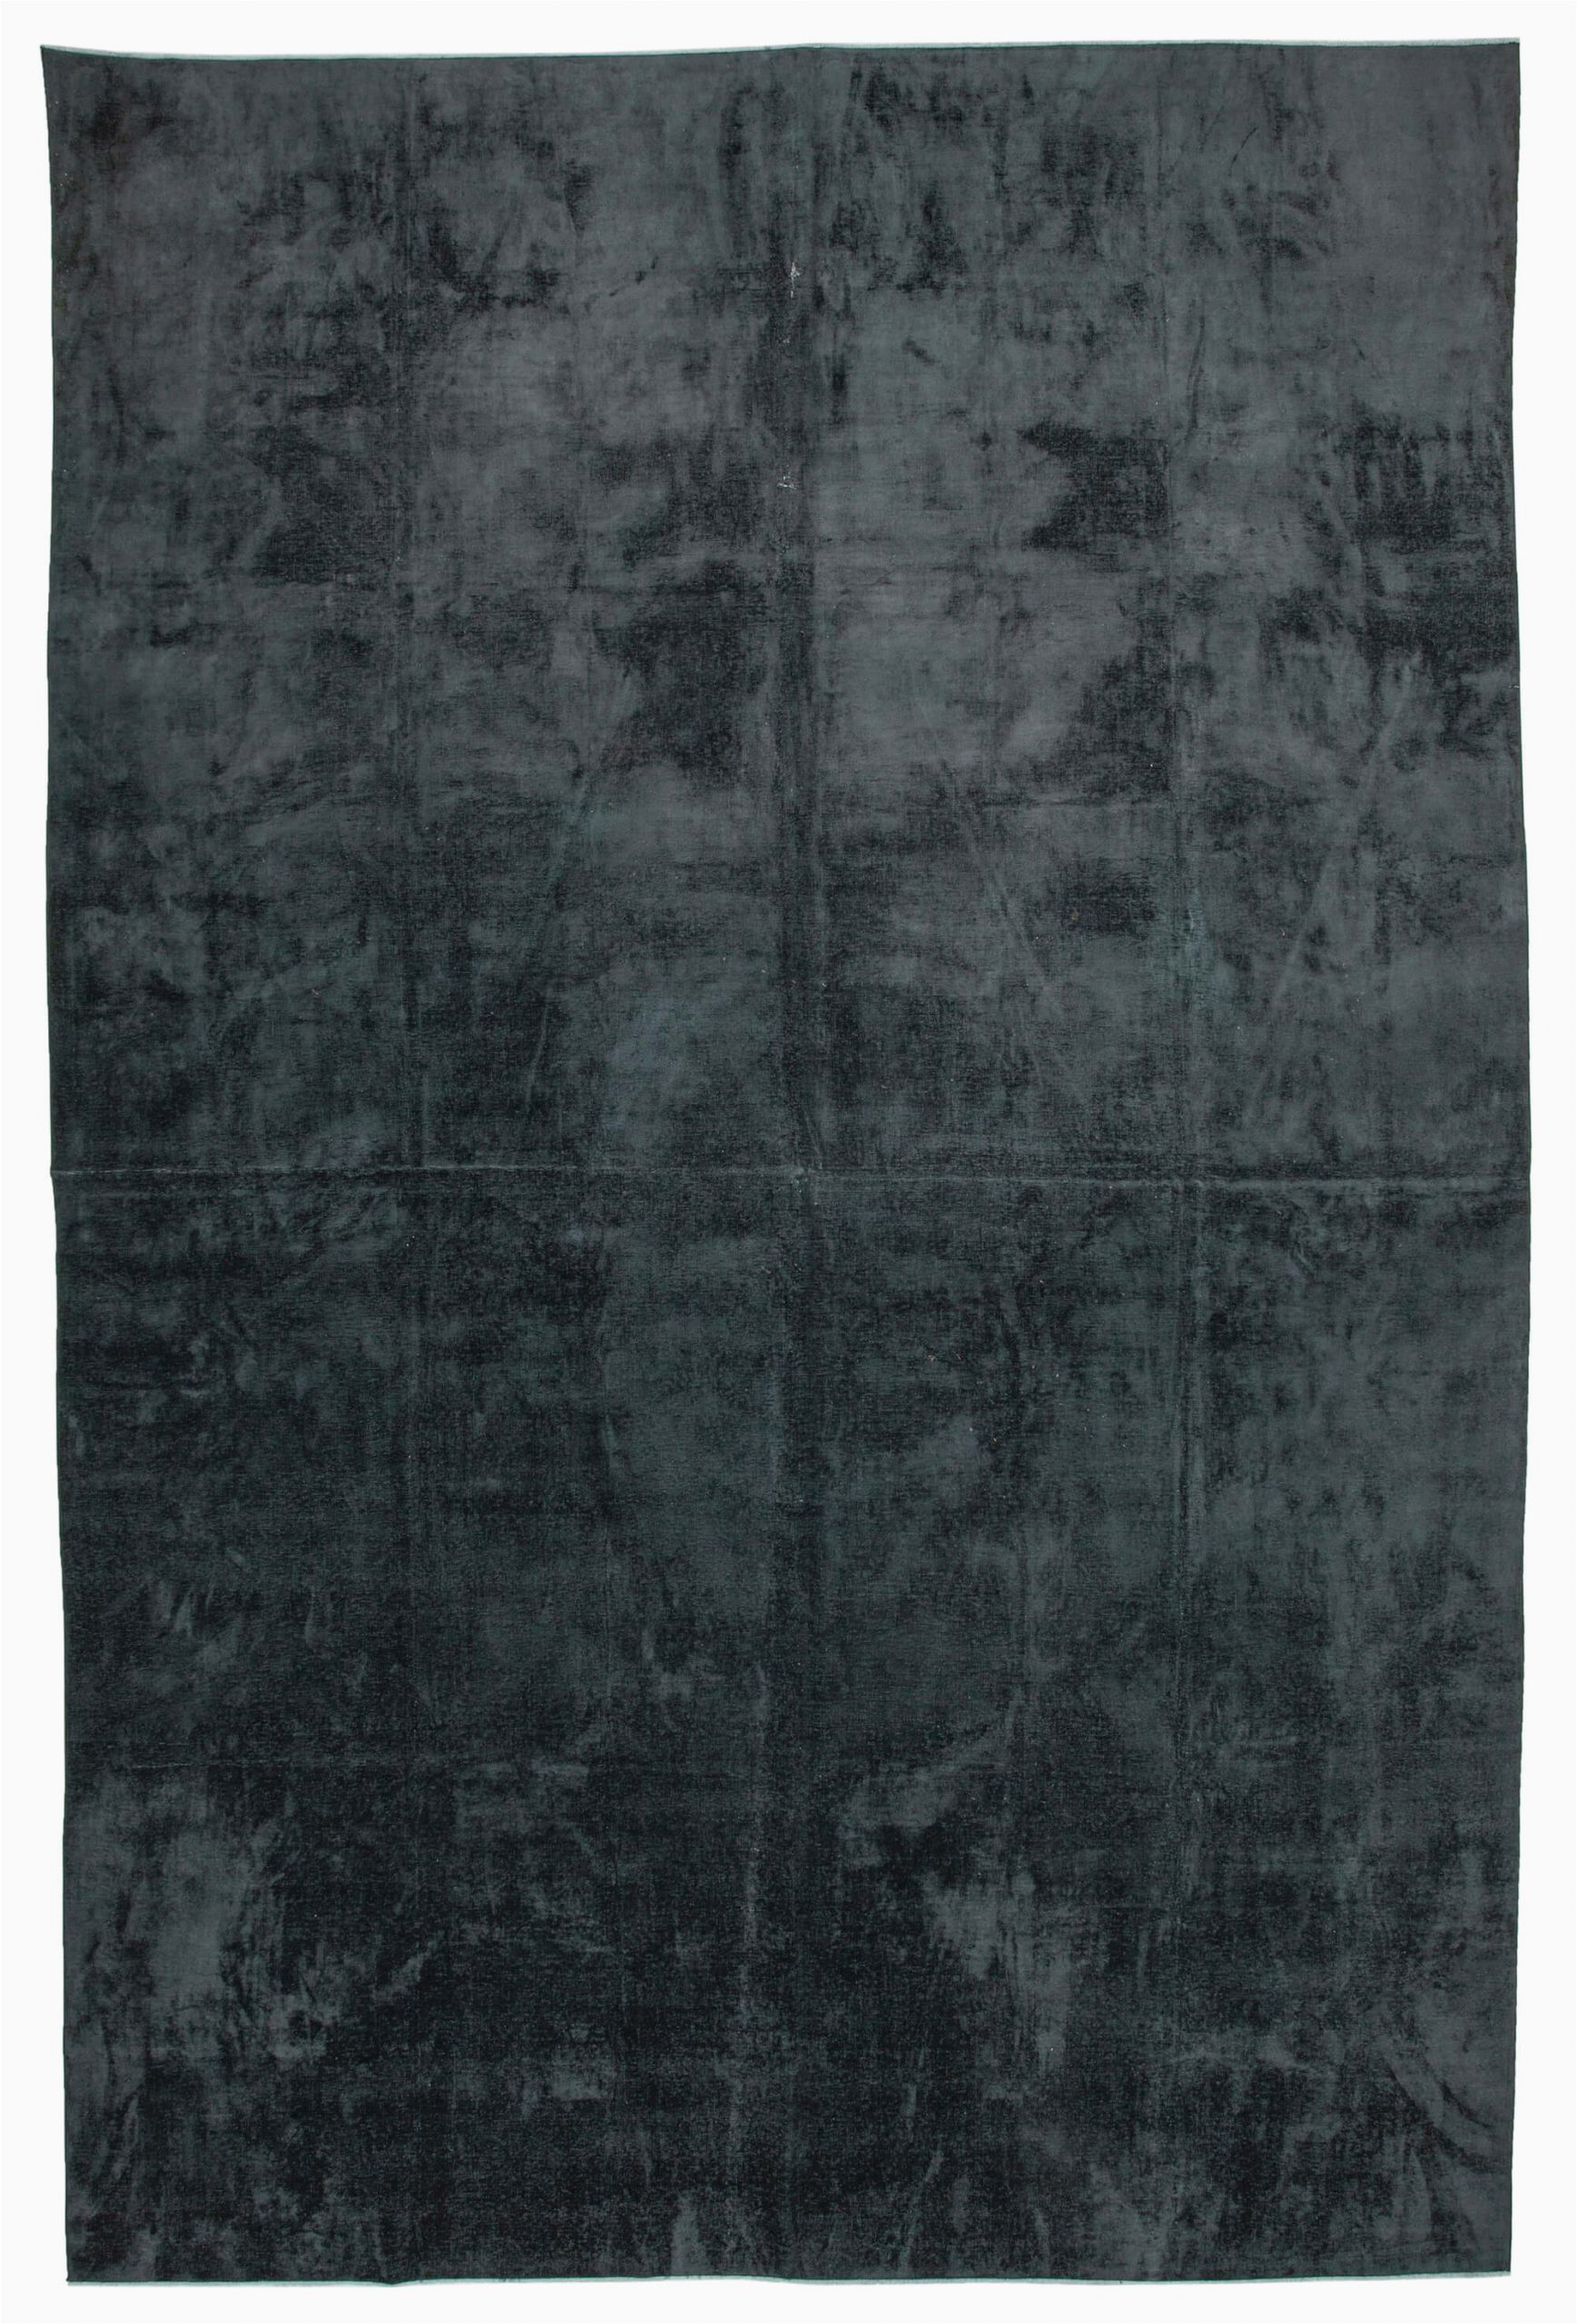 11x17 black overdyed large area rug 2416